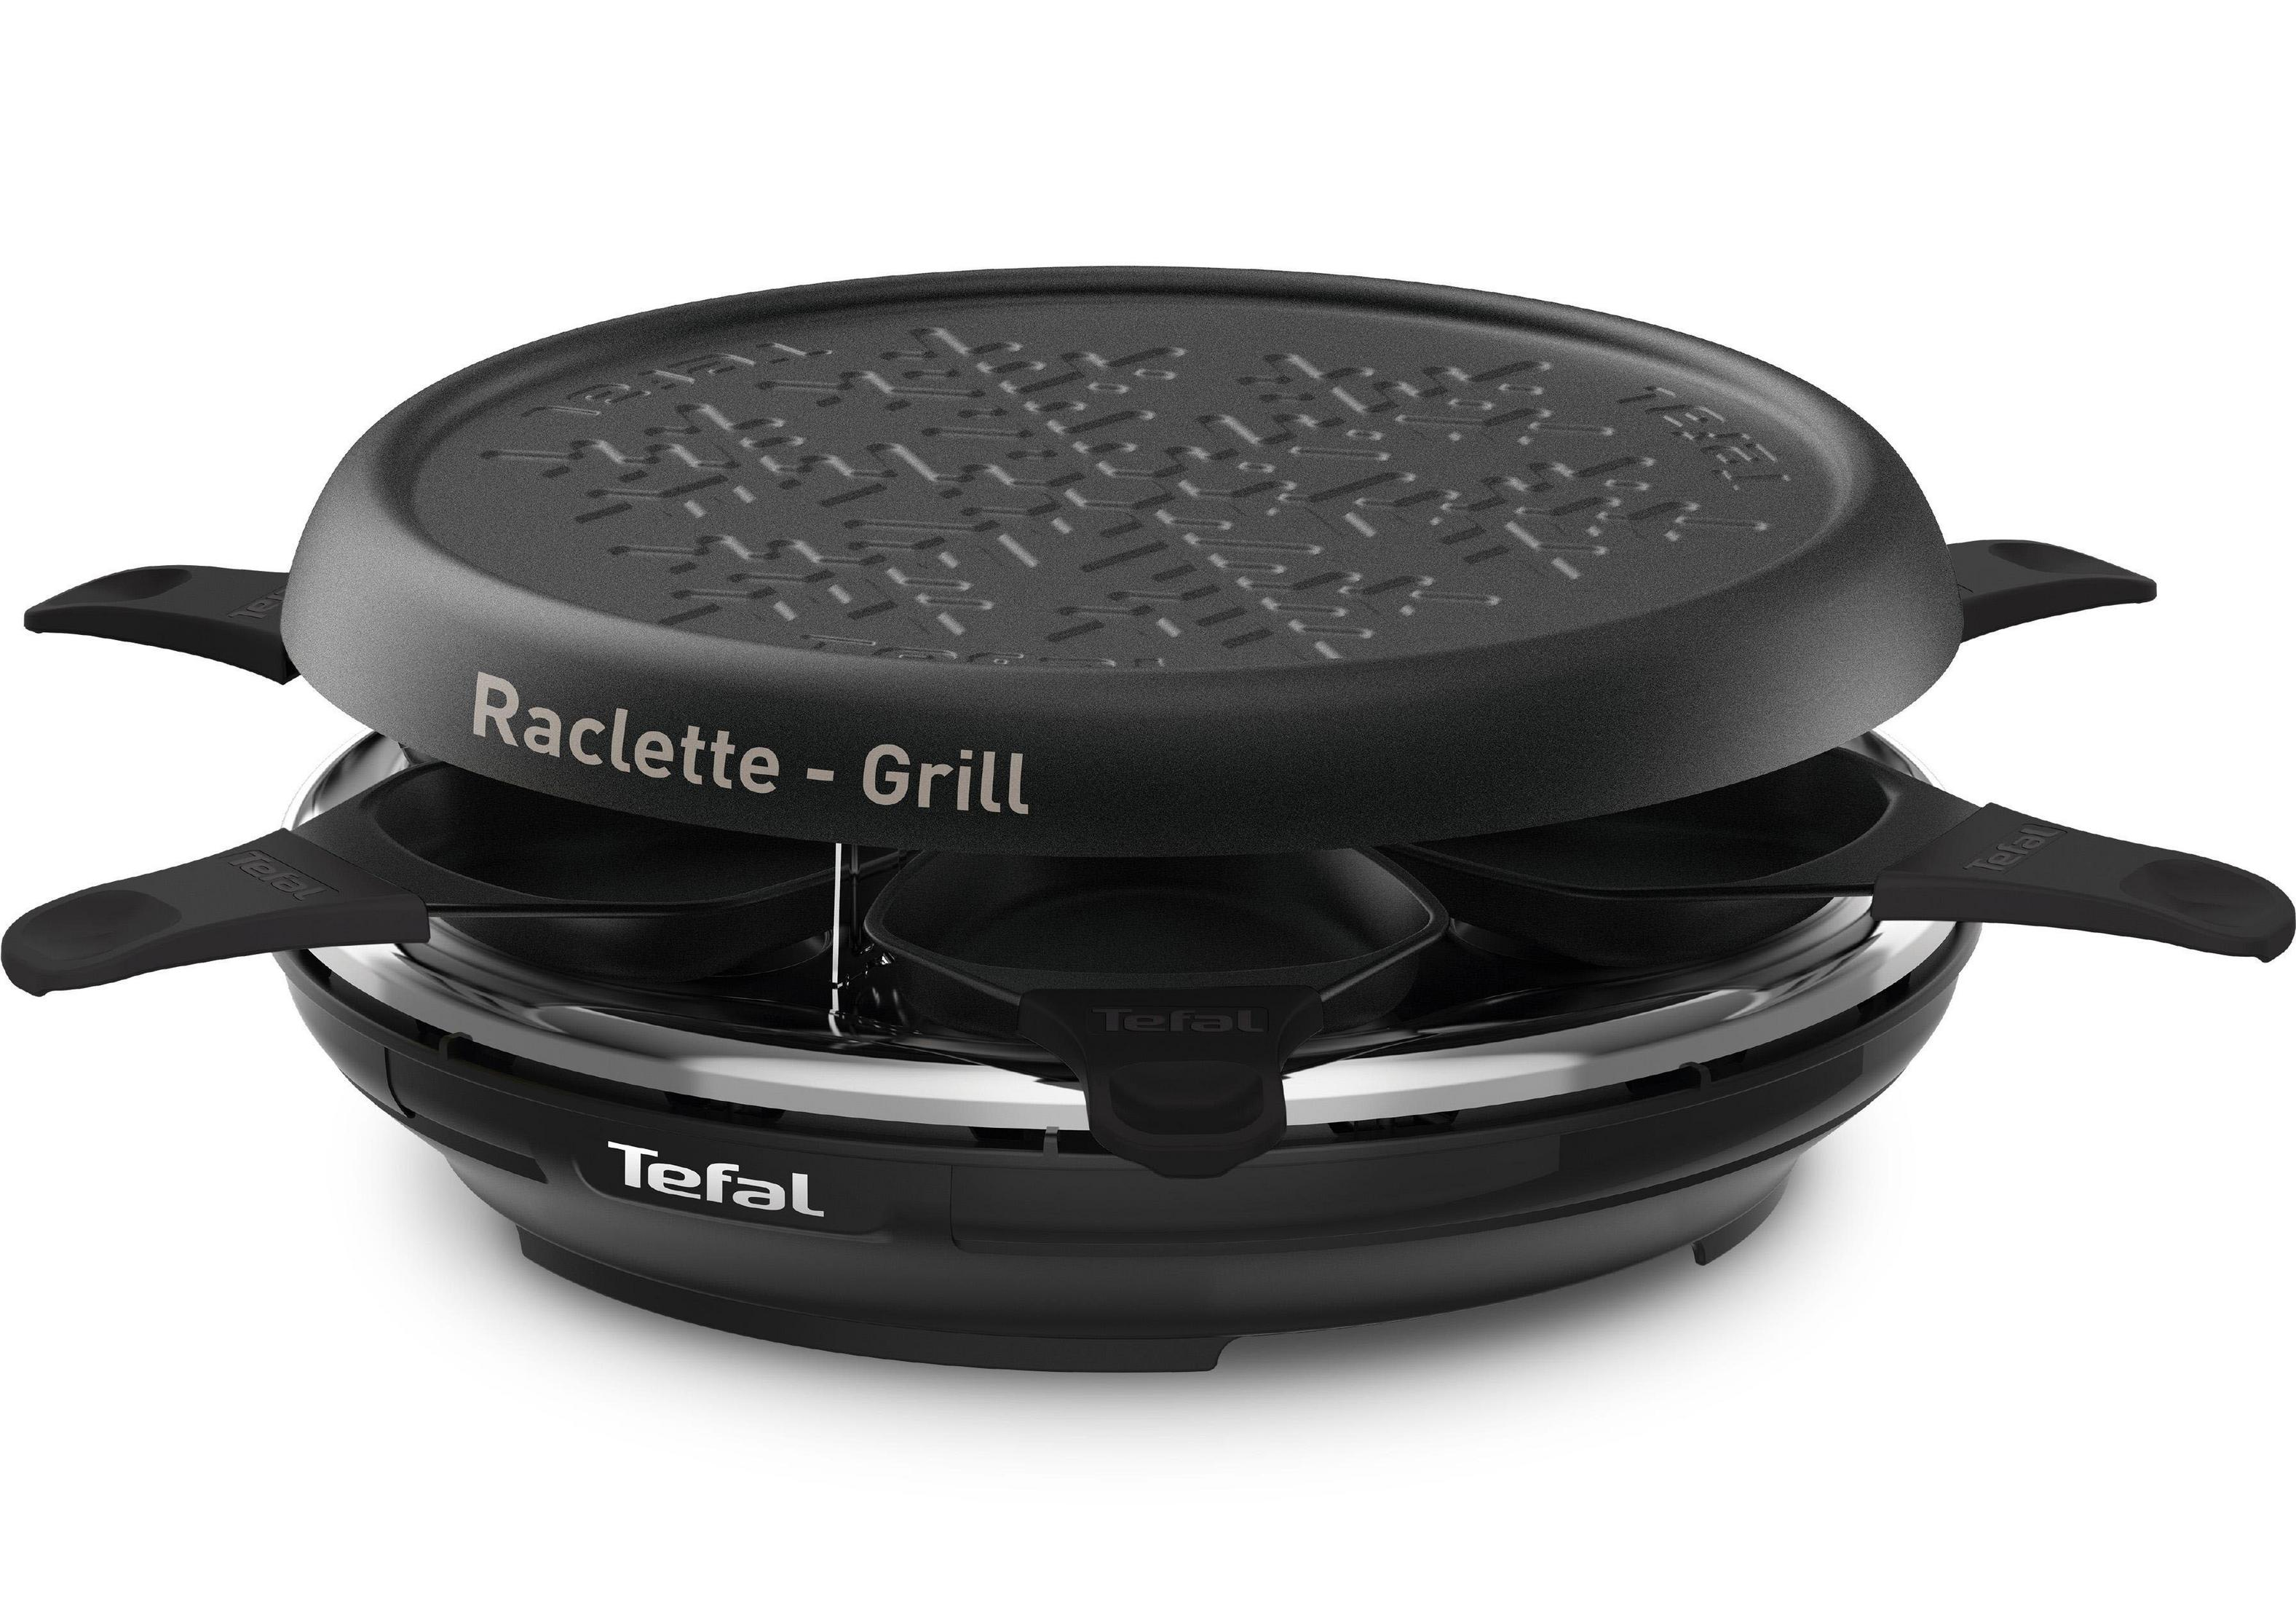 TEFAL RE 12 8 FÜR 6 A Raclette-Grill PERSONEN